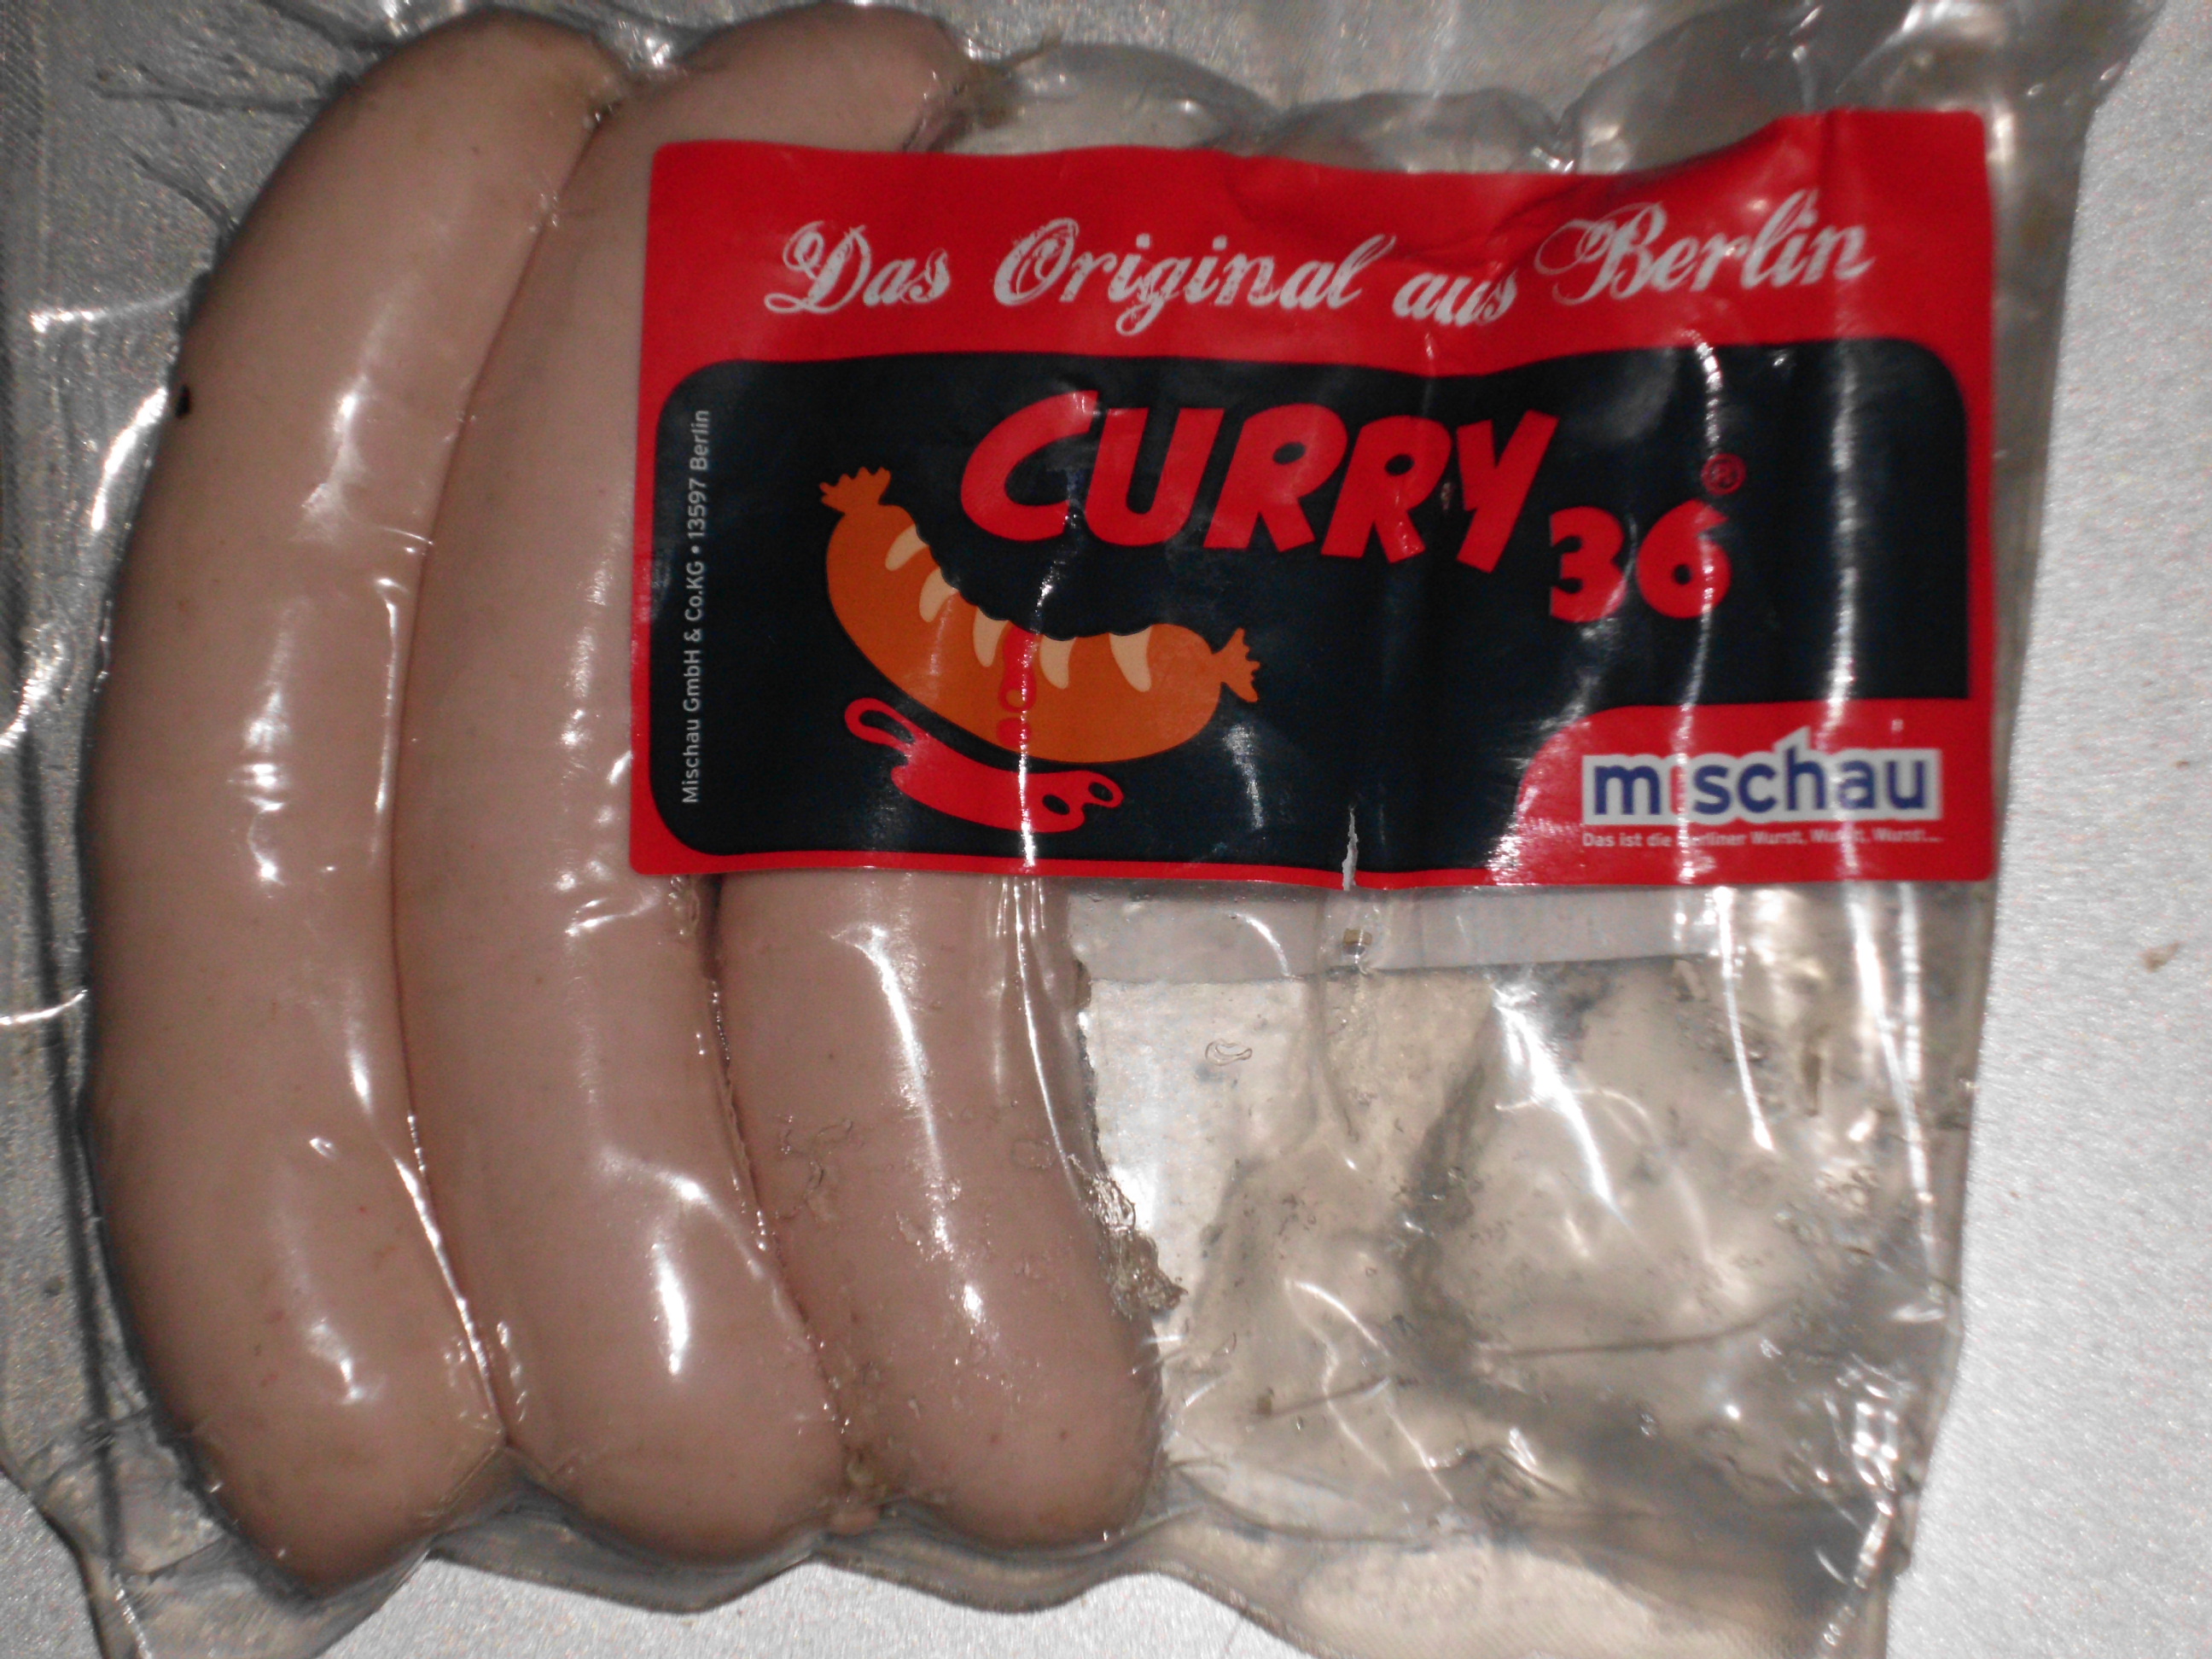 Curry 36 Würste von Mischau